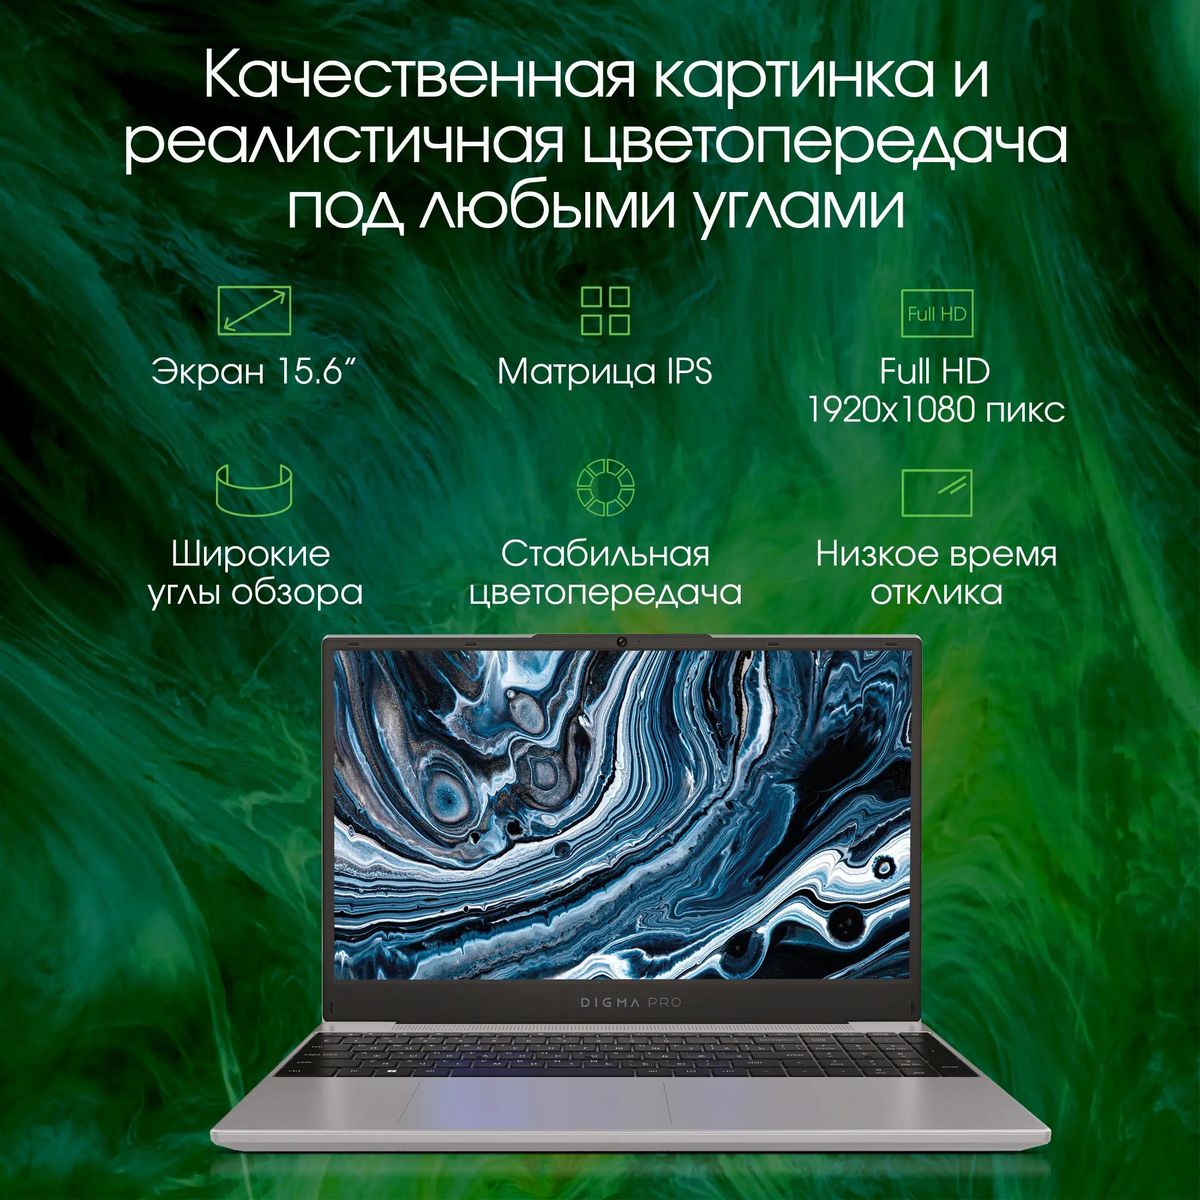 Ноутбук DIGMA PRO Breve DN15R5-8DXW03, 15.6", IPS, AMD Ryzen 5 5500U, 6-ядерный, 8ГБ DDR4, 512ГБ SSD,  AMD Radeon, серебристый